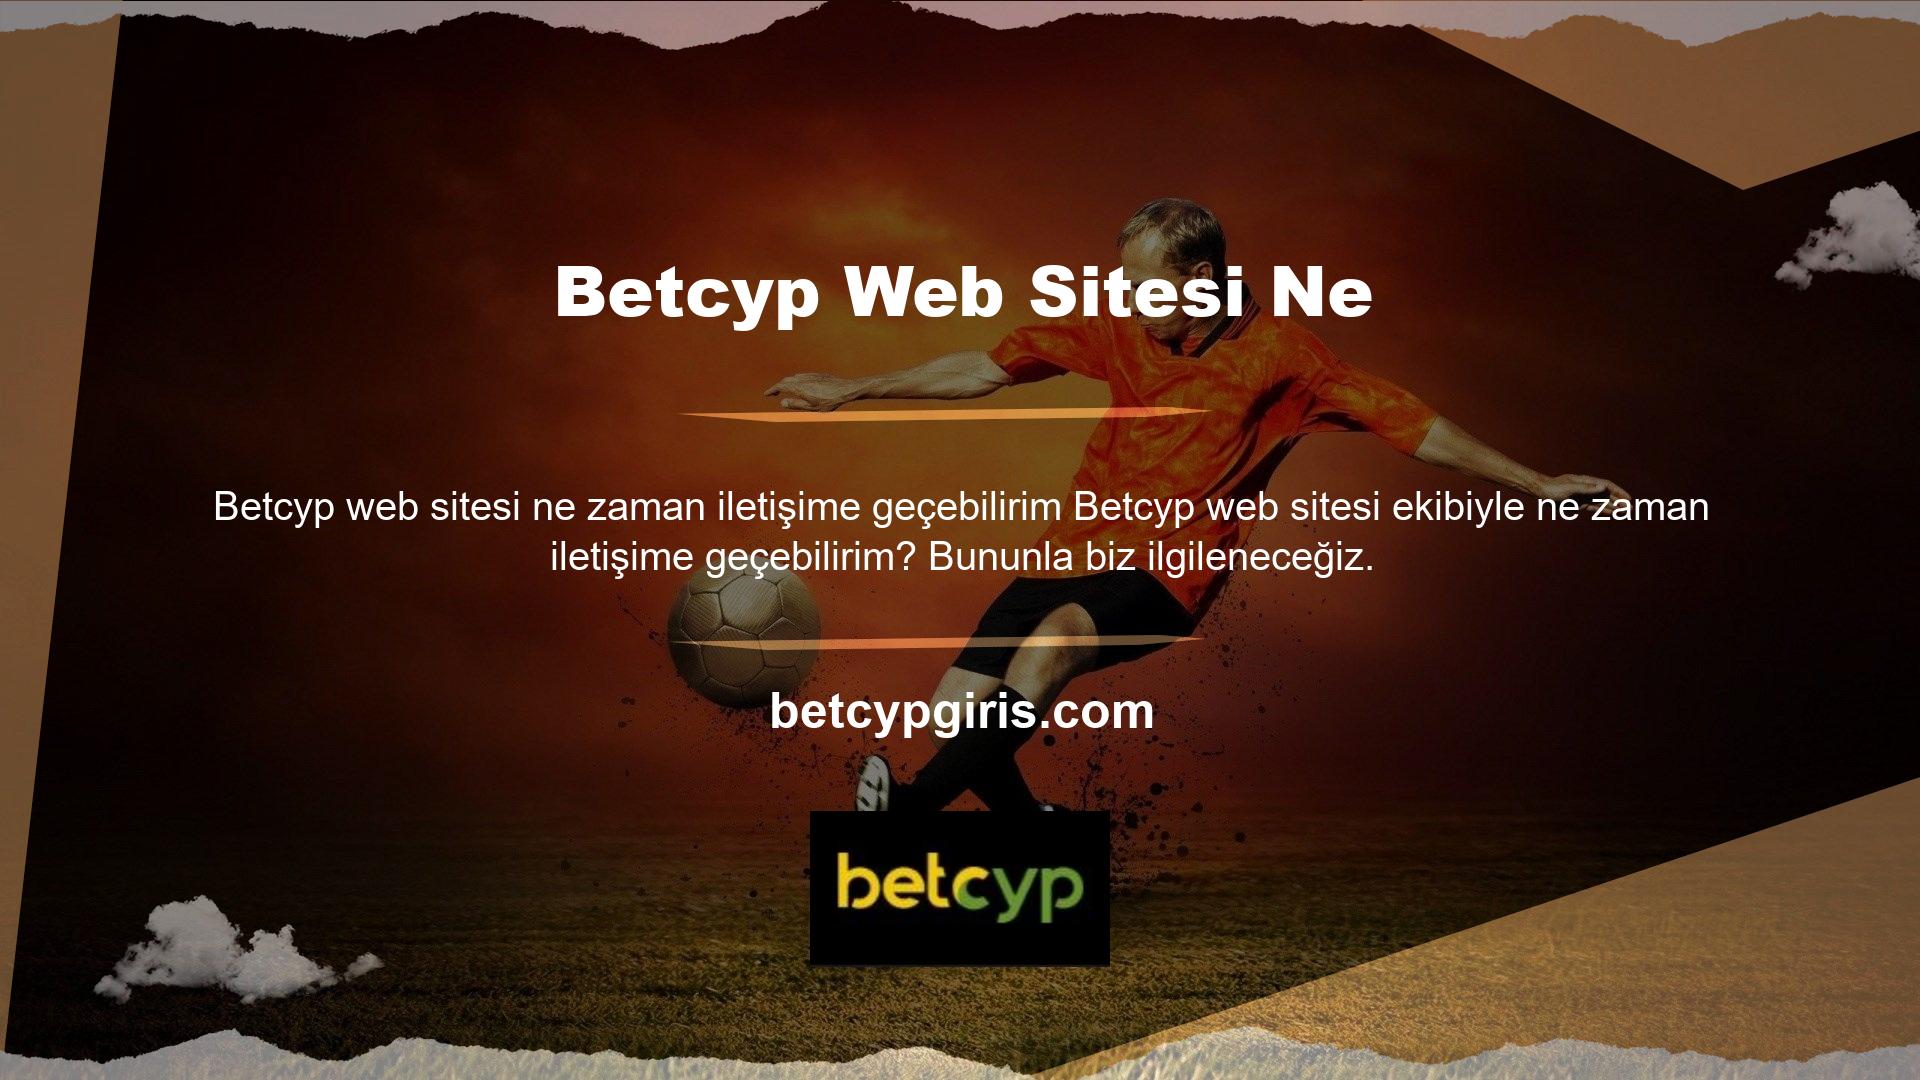 Bu kural uygulanmasına rağmen, Betcyp web sitesinde gün veya saat dilimi uygulaması yoktur